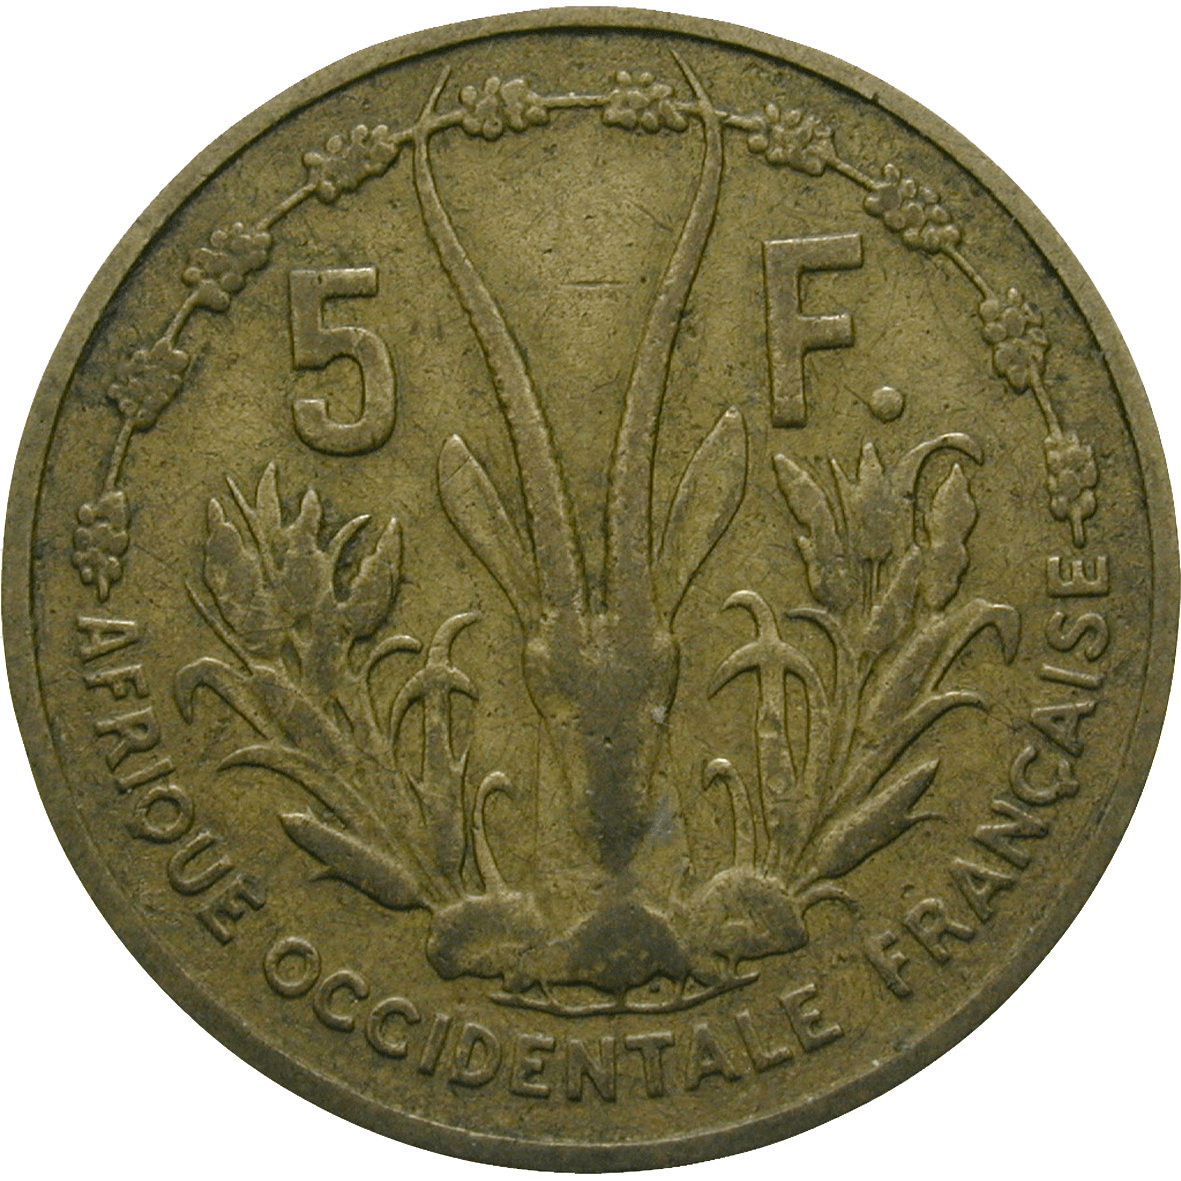 Republik Frankreich für Französisch-Westafrika, 5 Francs 1956 (reverse)